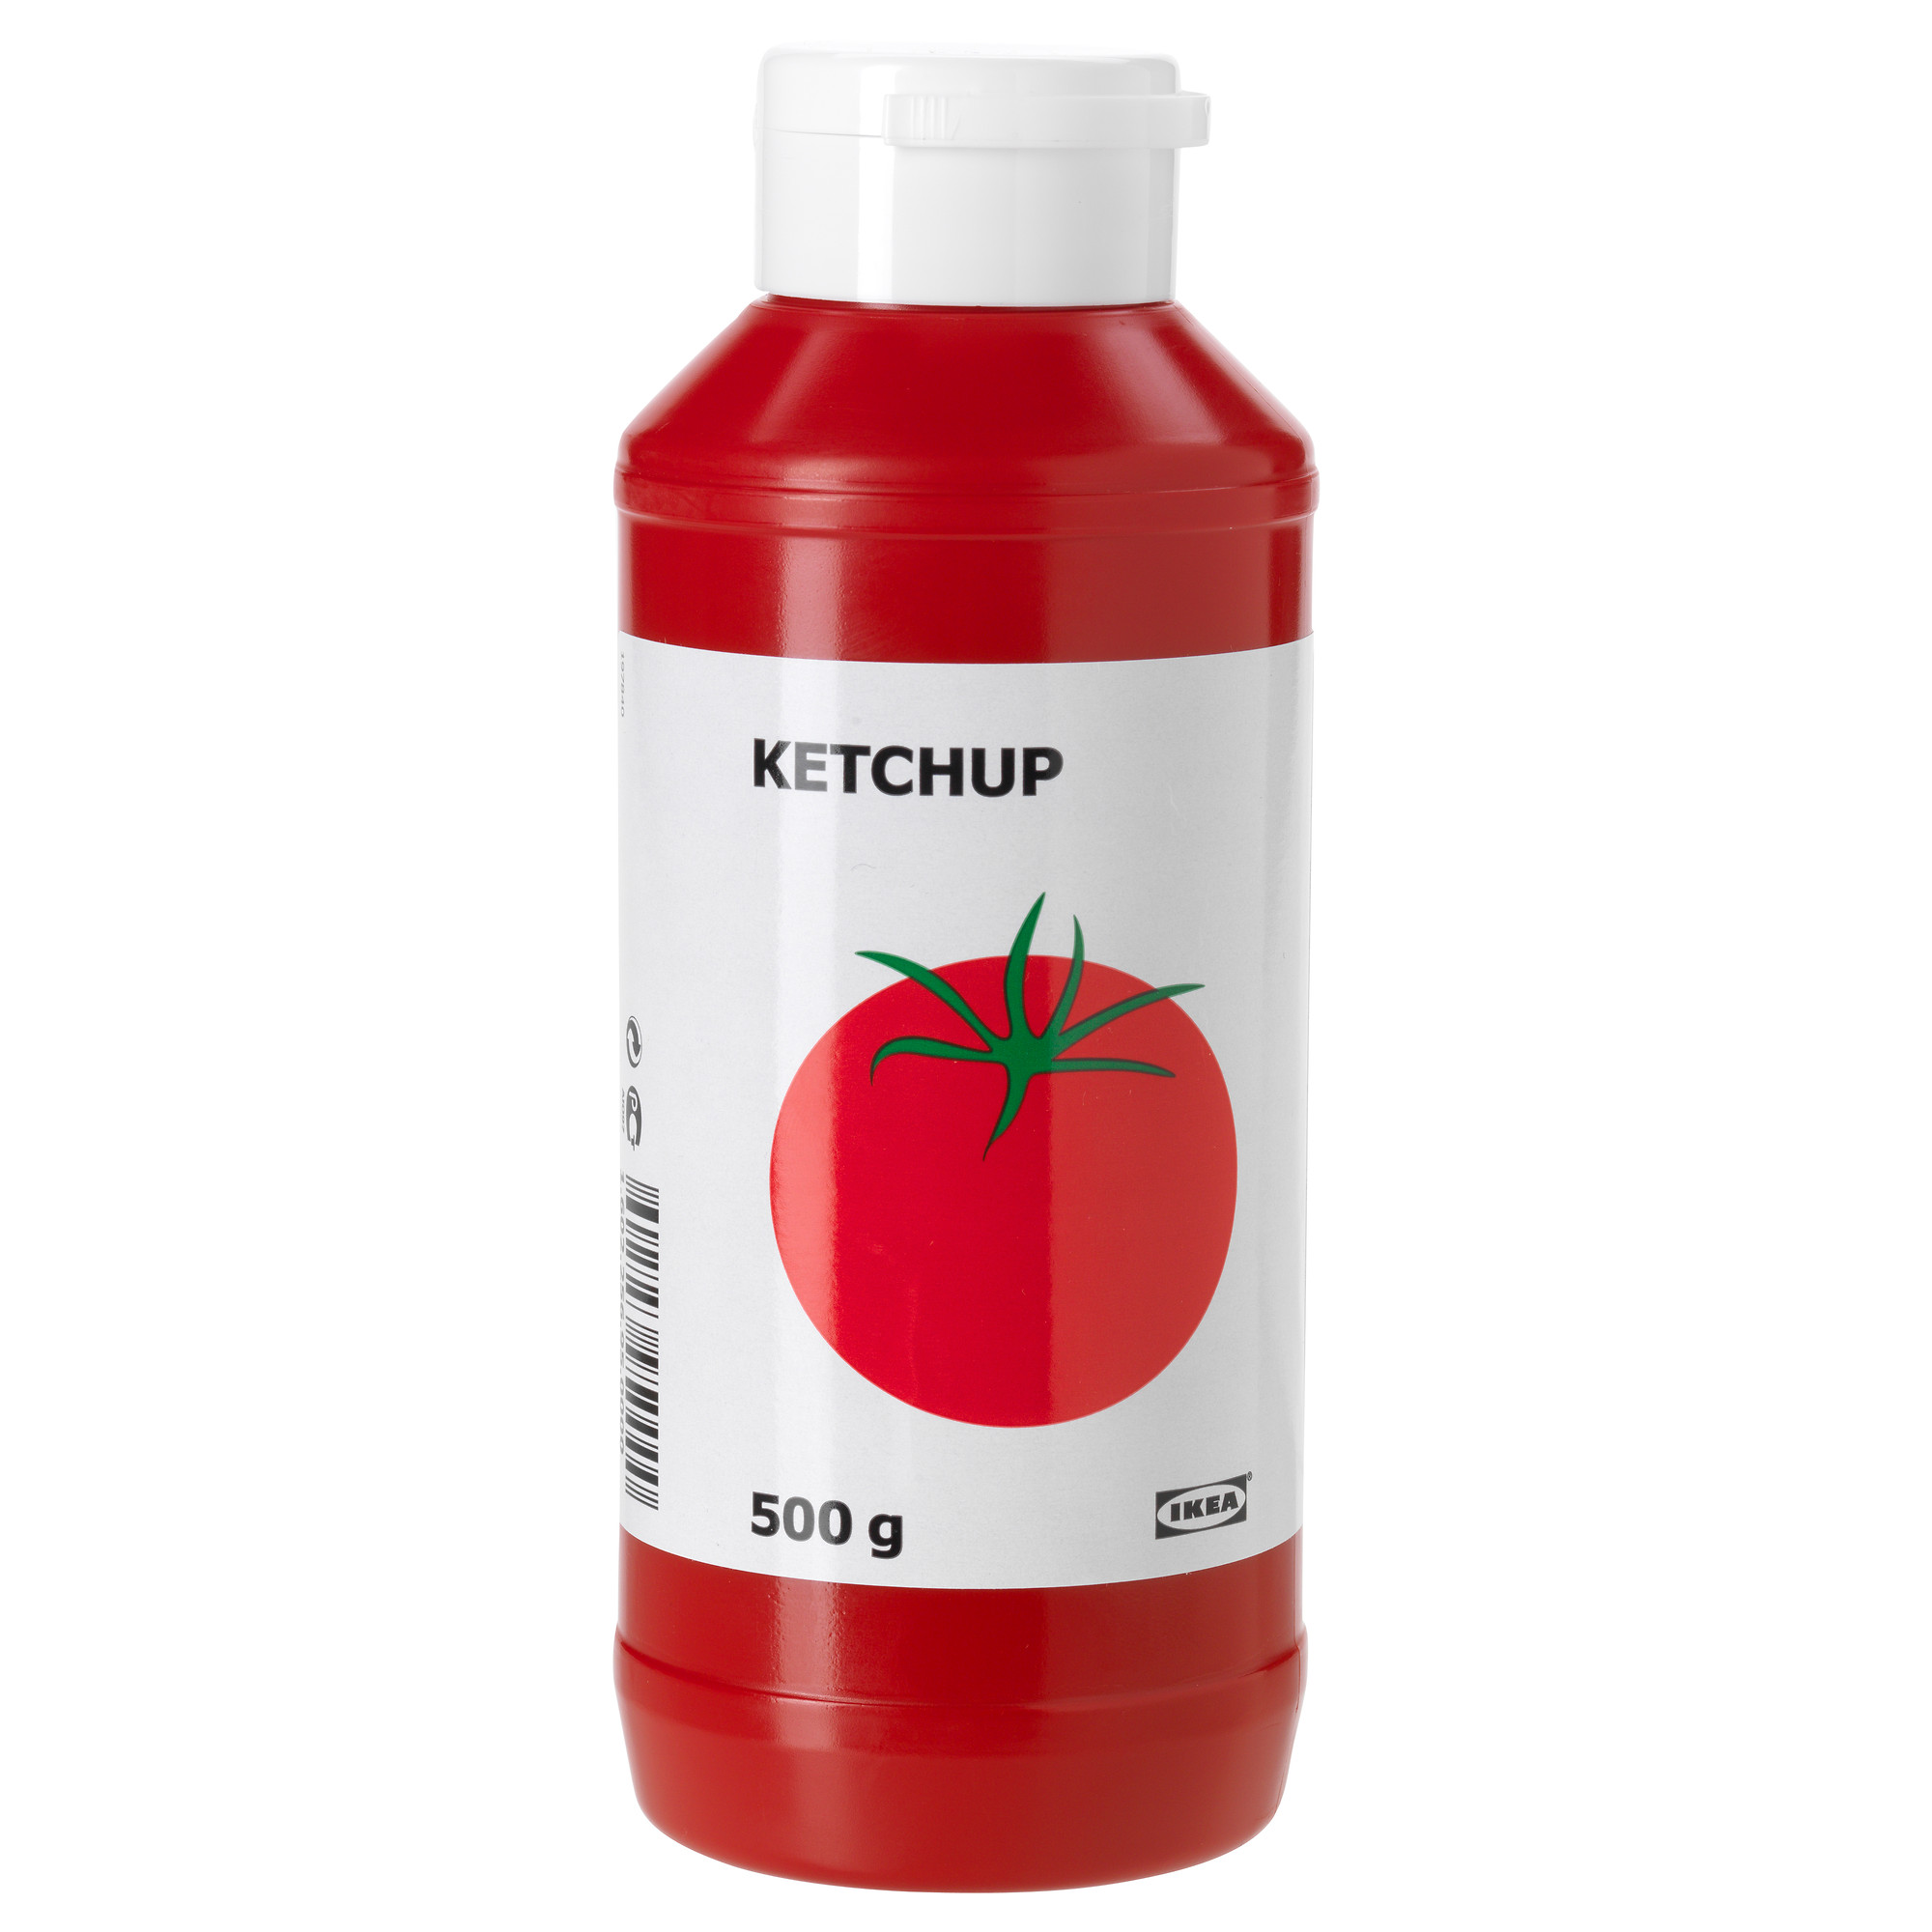 KETCHUP tomato ketchup